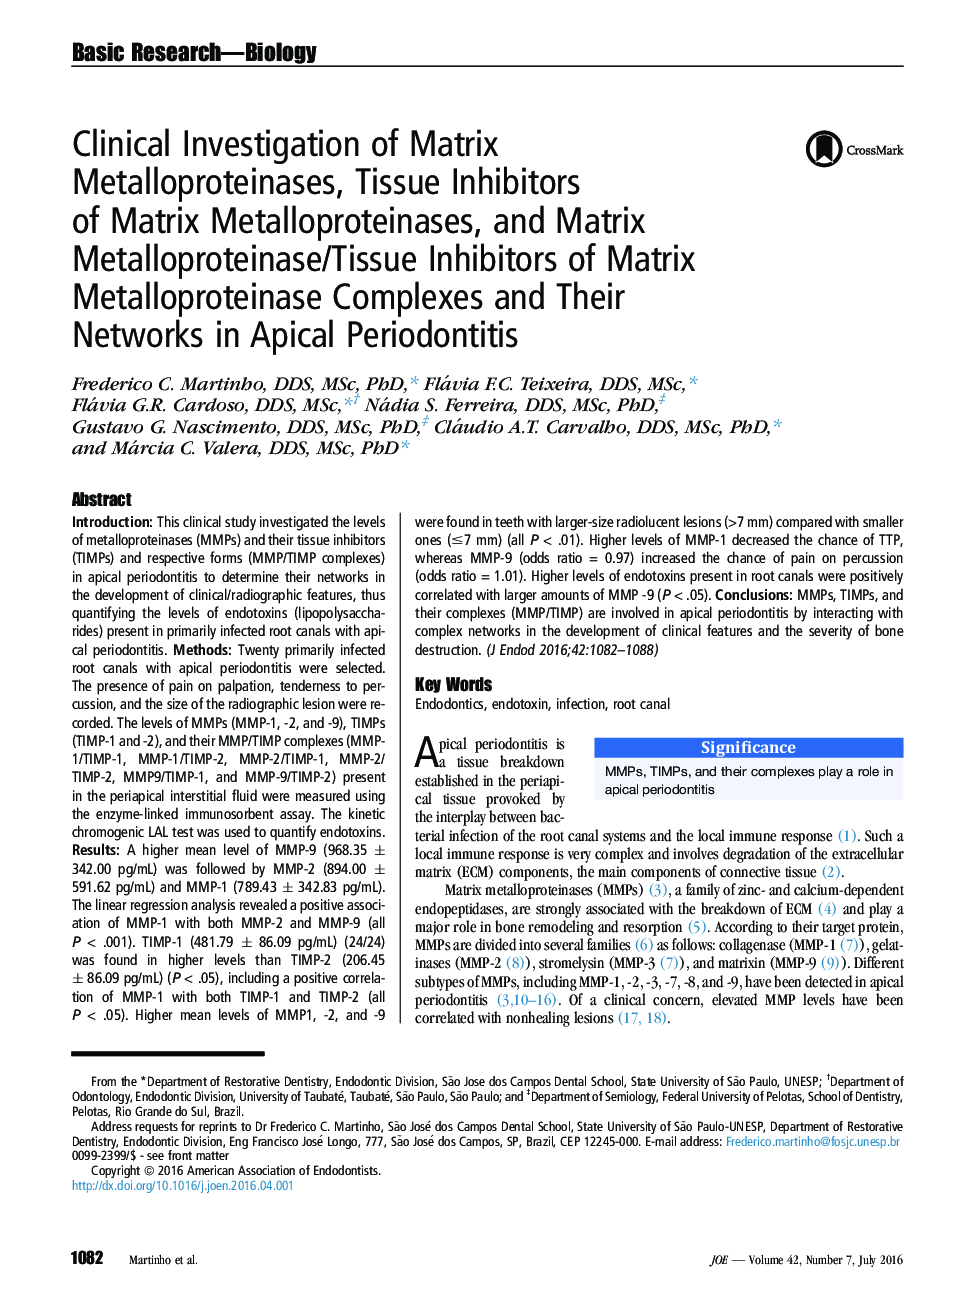 بررسی بالینی متالوپروتئینازهای ماتریکس، مهار کننده های مایع متالوپروتئیناز ماتریکس و مهار کننده های متالوپروتئیناز ماتریکس / بافت مولکول های متالوپروتئیناز ماتریکس و شبکه های آنها در پریودنتال آپیکال 